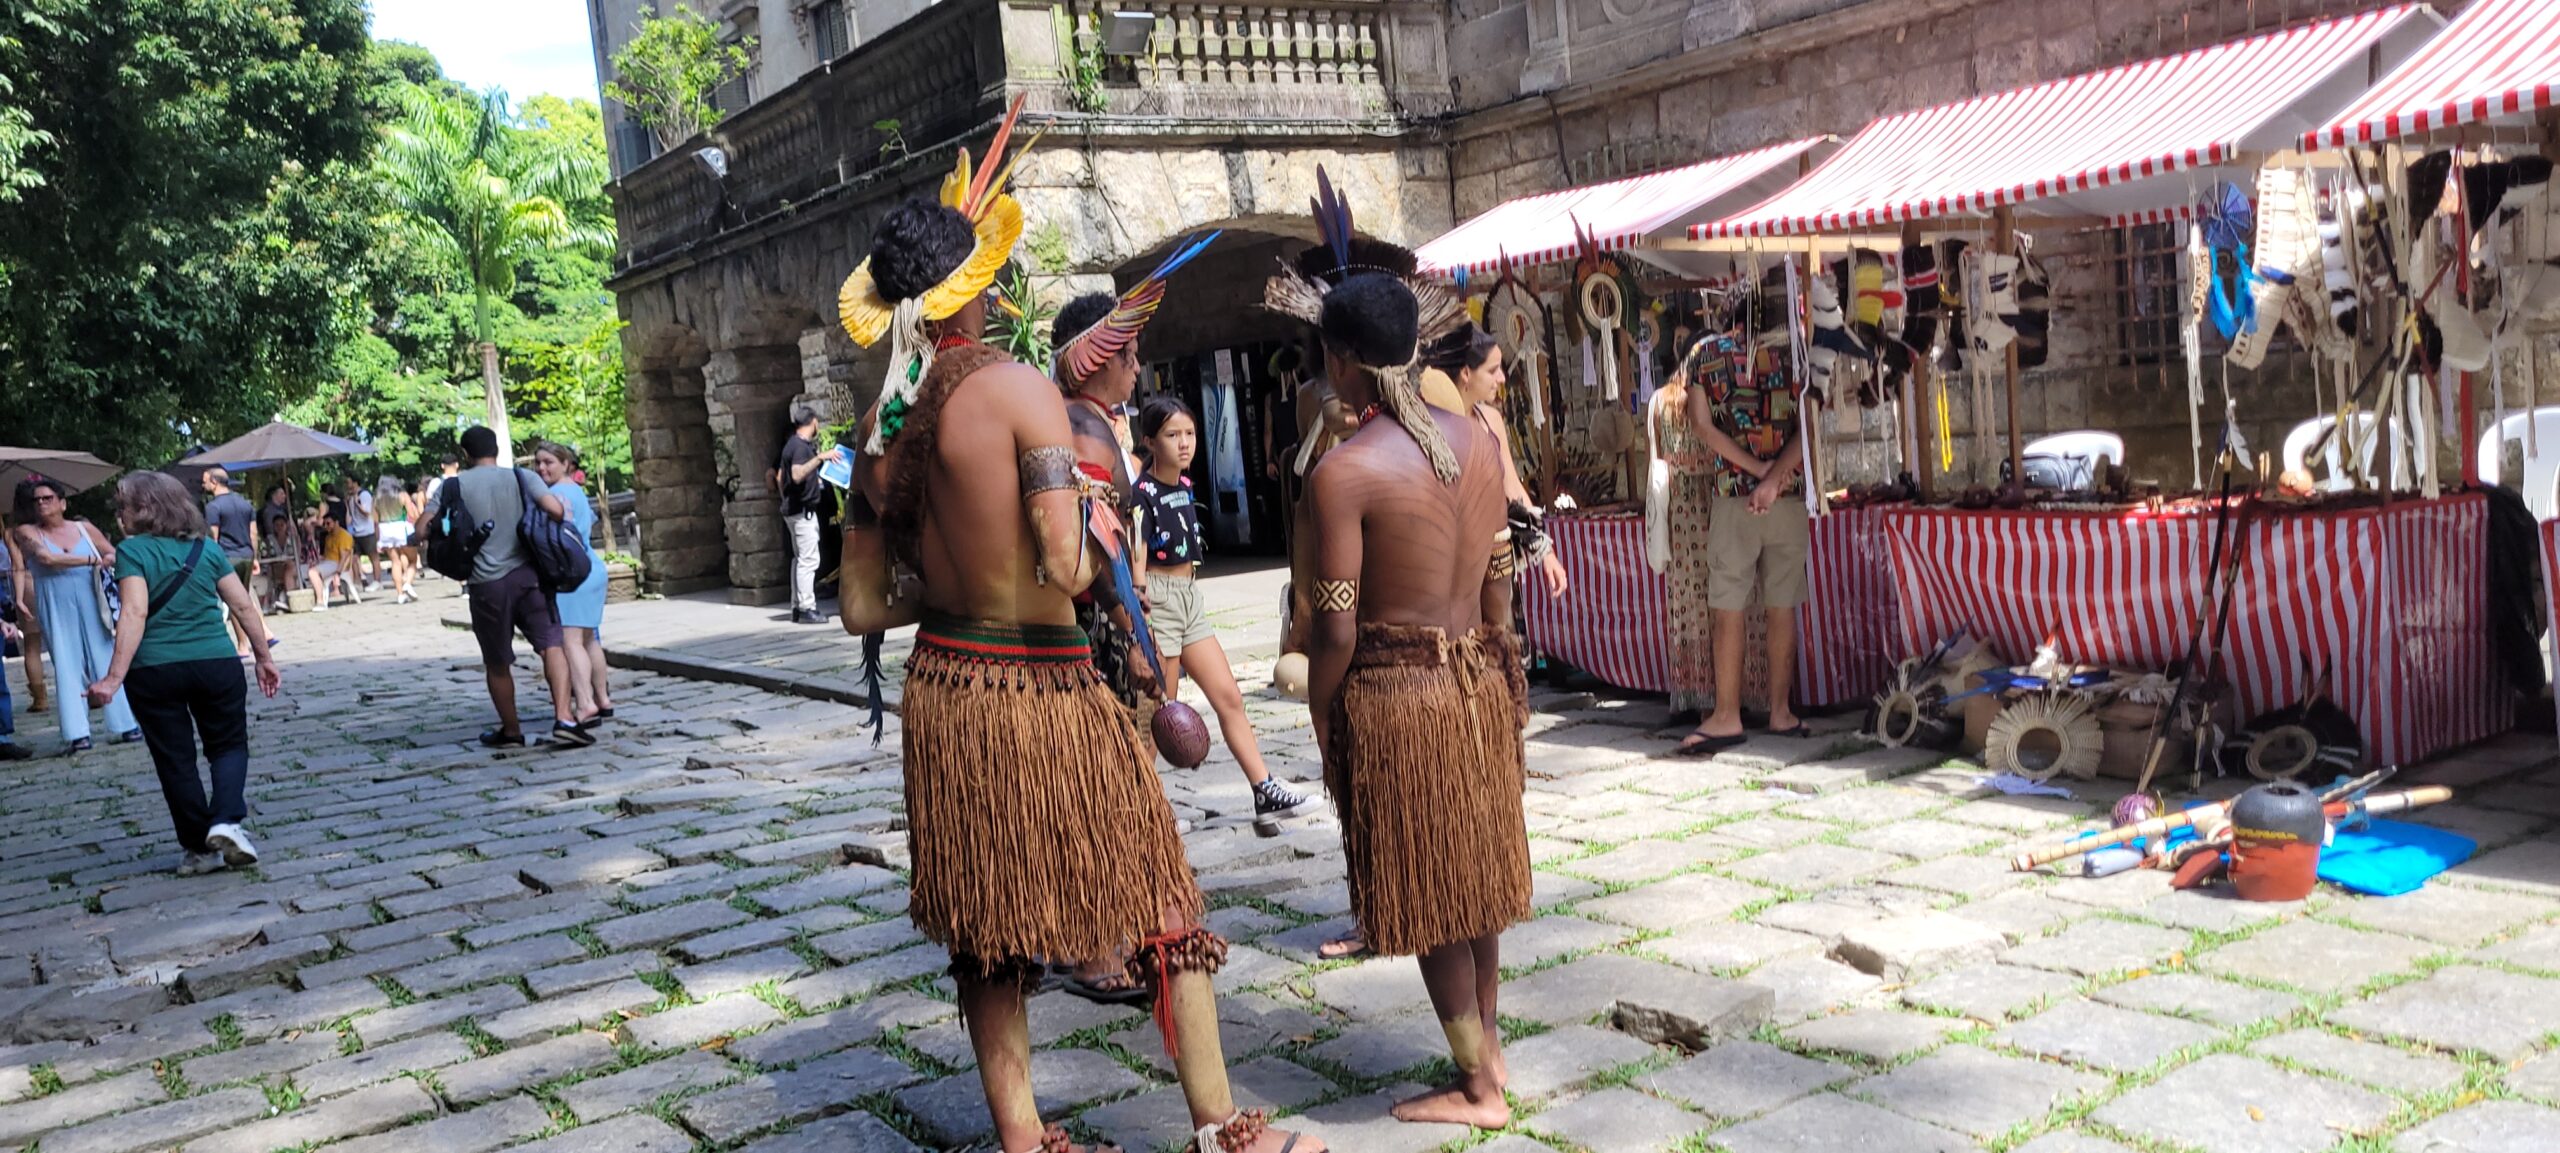 Tradição viva: Feira no Rio de Janeiro honra a cultura indígena